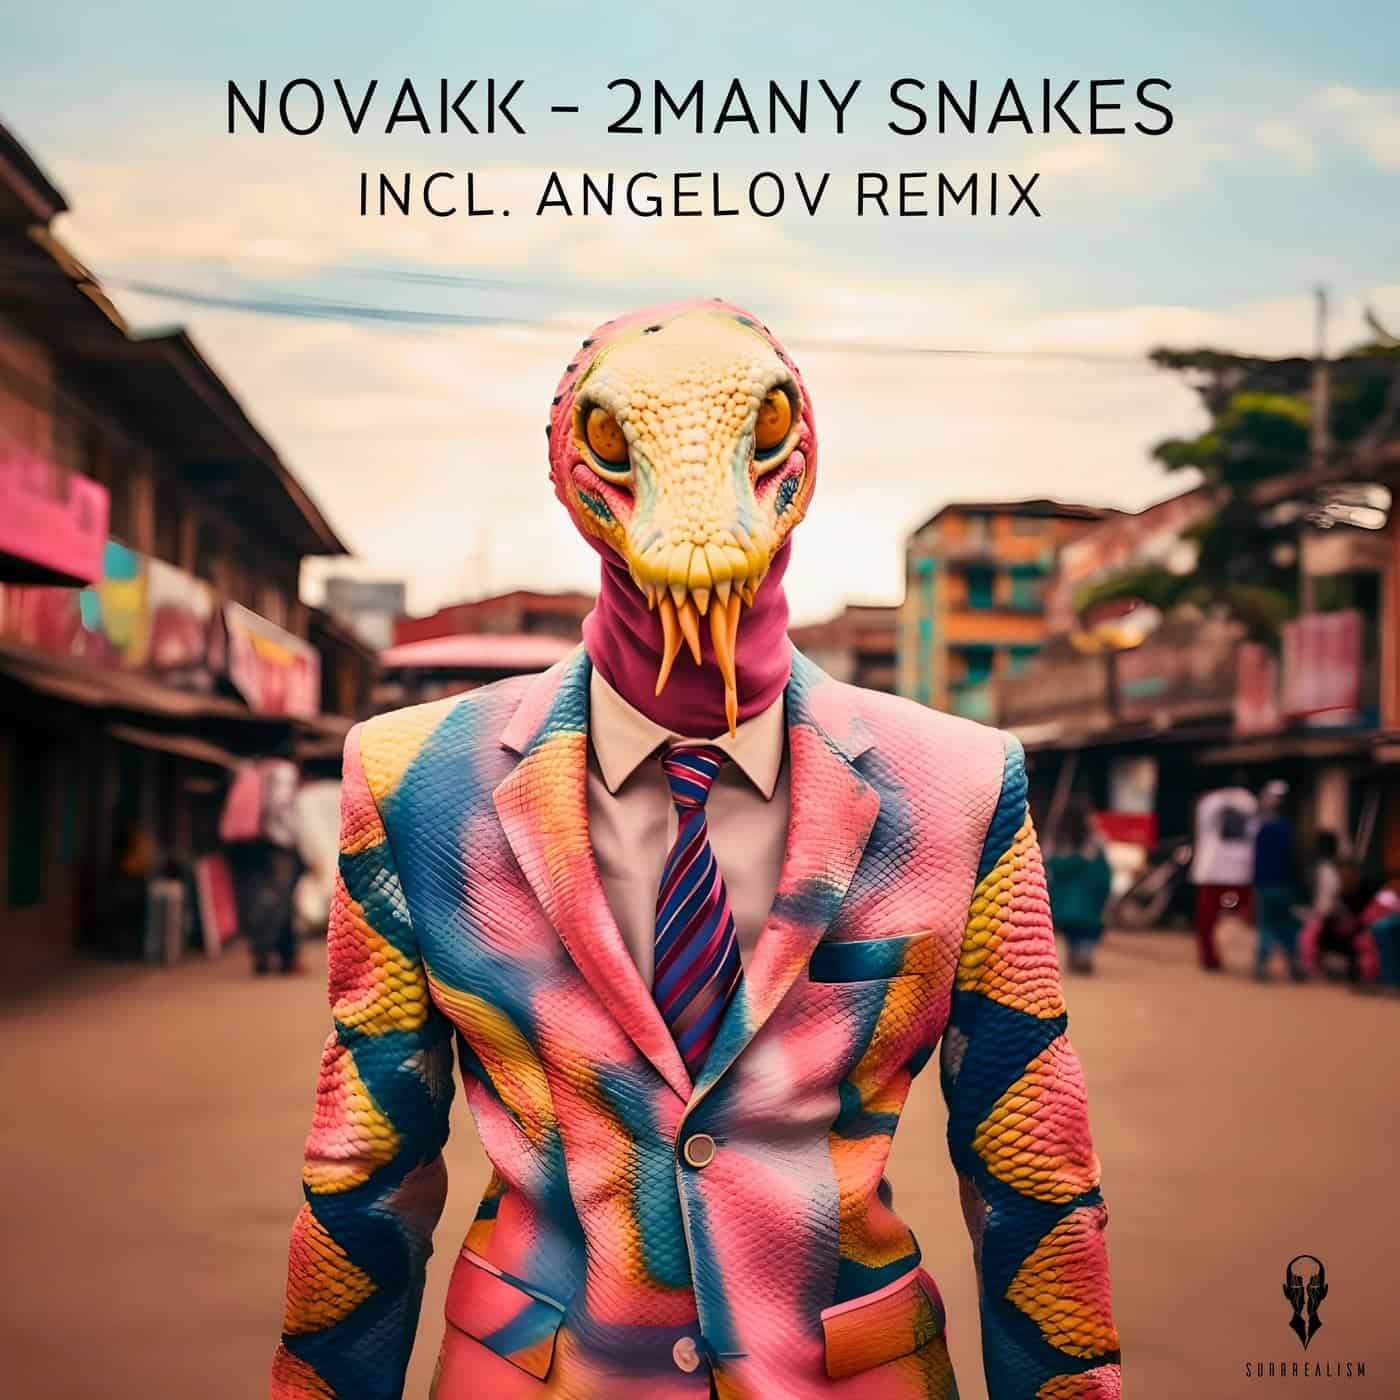 image cover: Novakk - 2many Snakes on Surrrealism